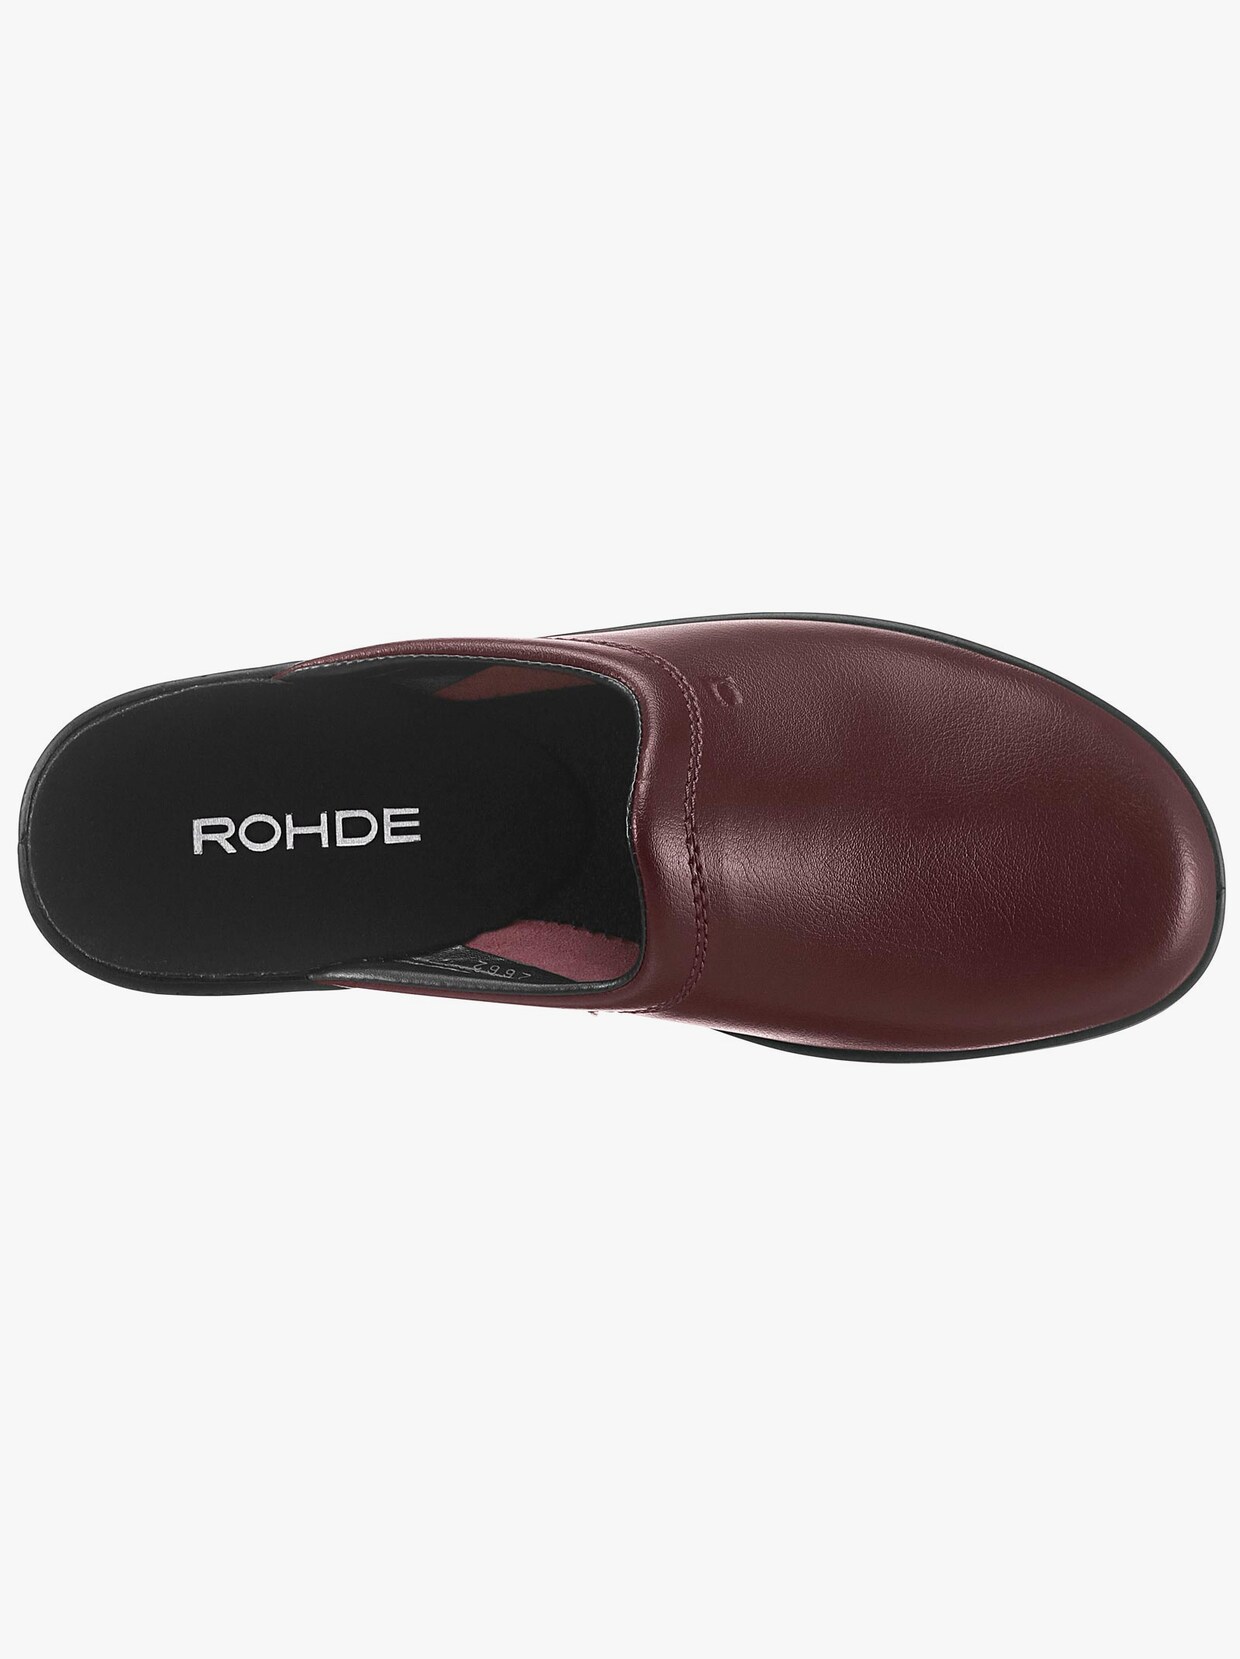 Rohde Pantoffels - bordeaux